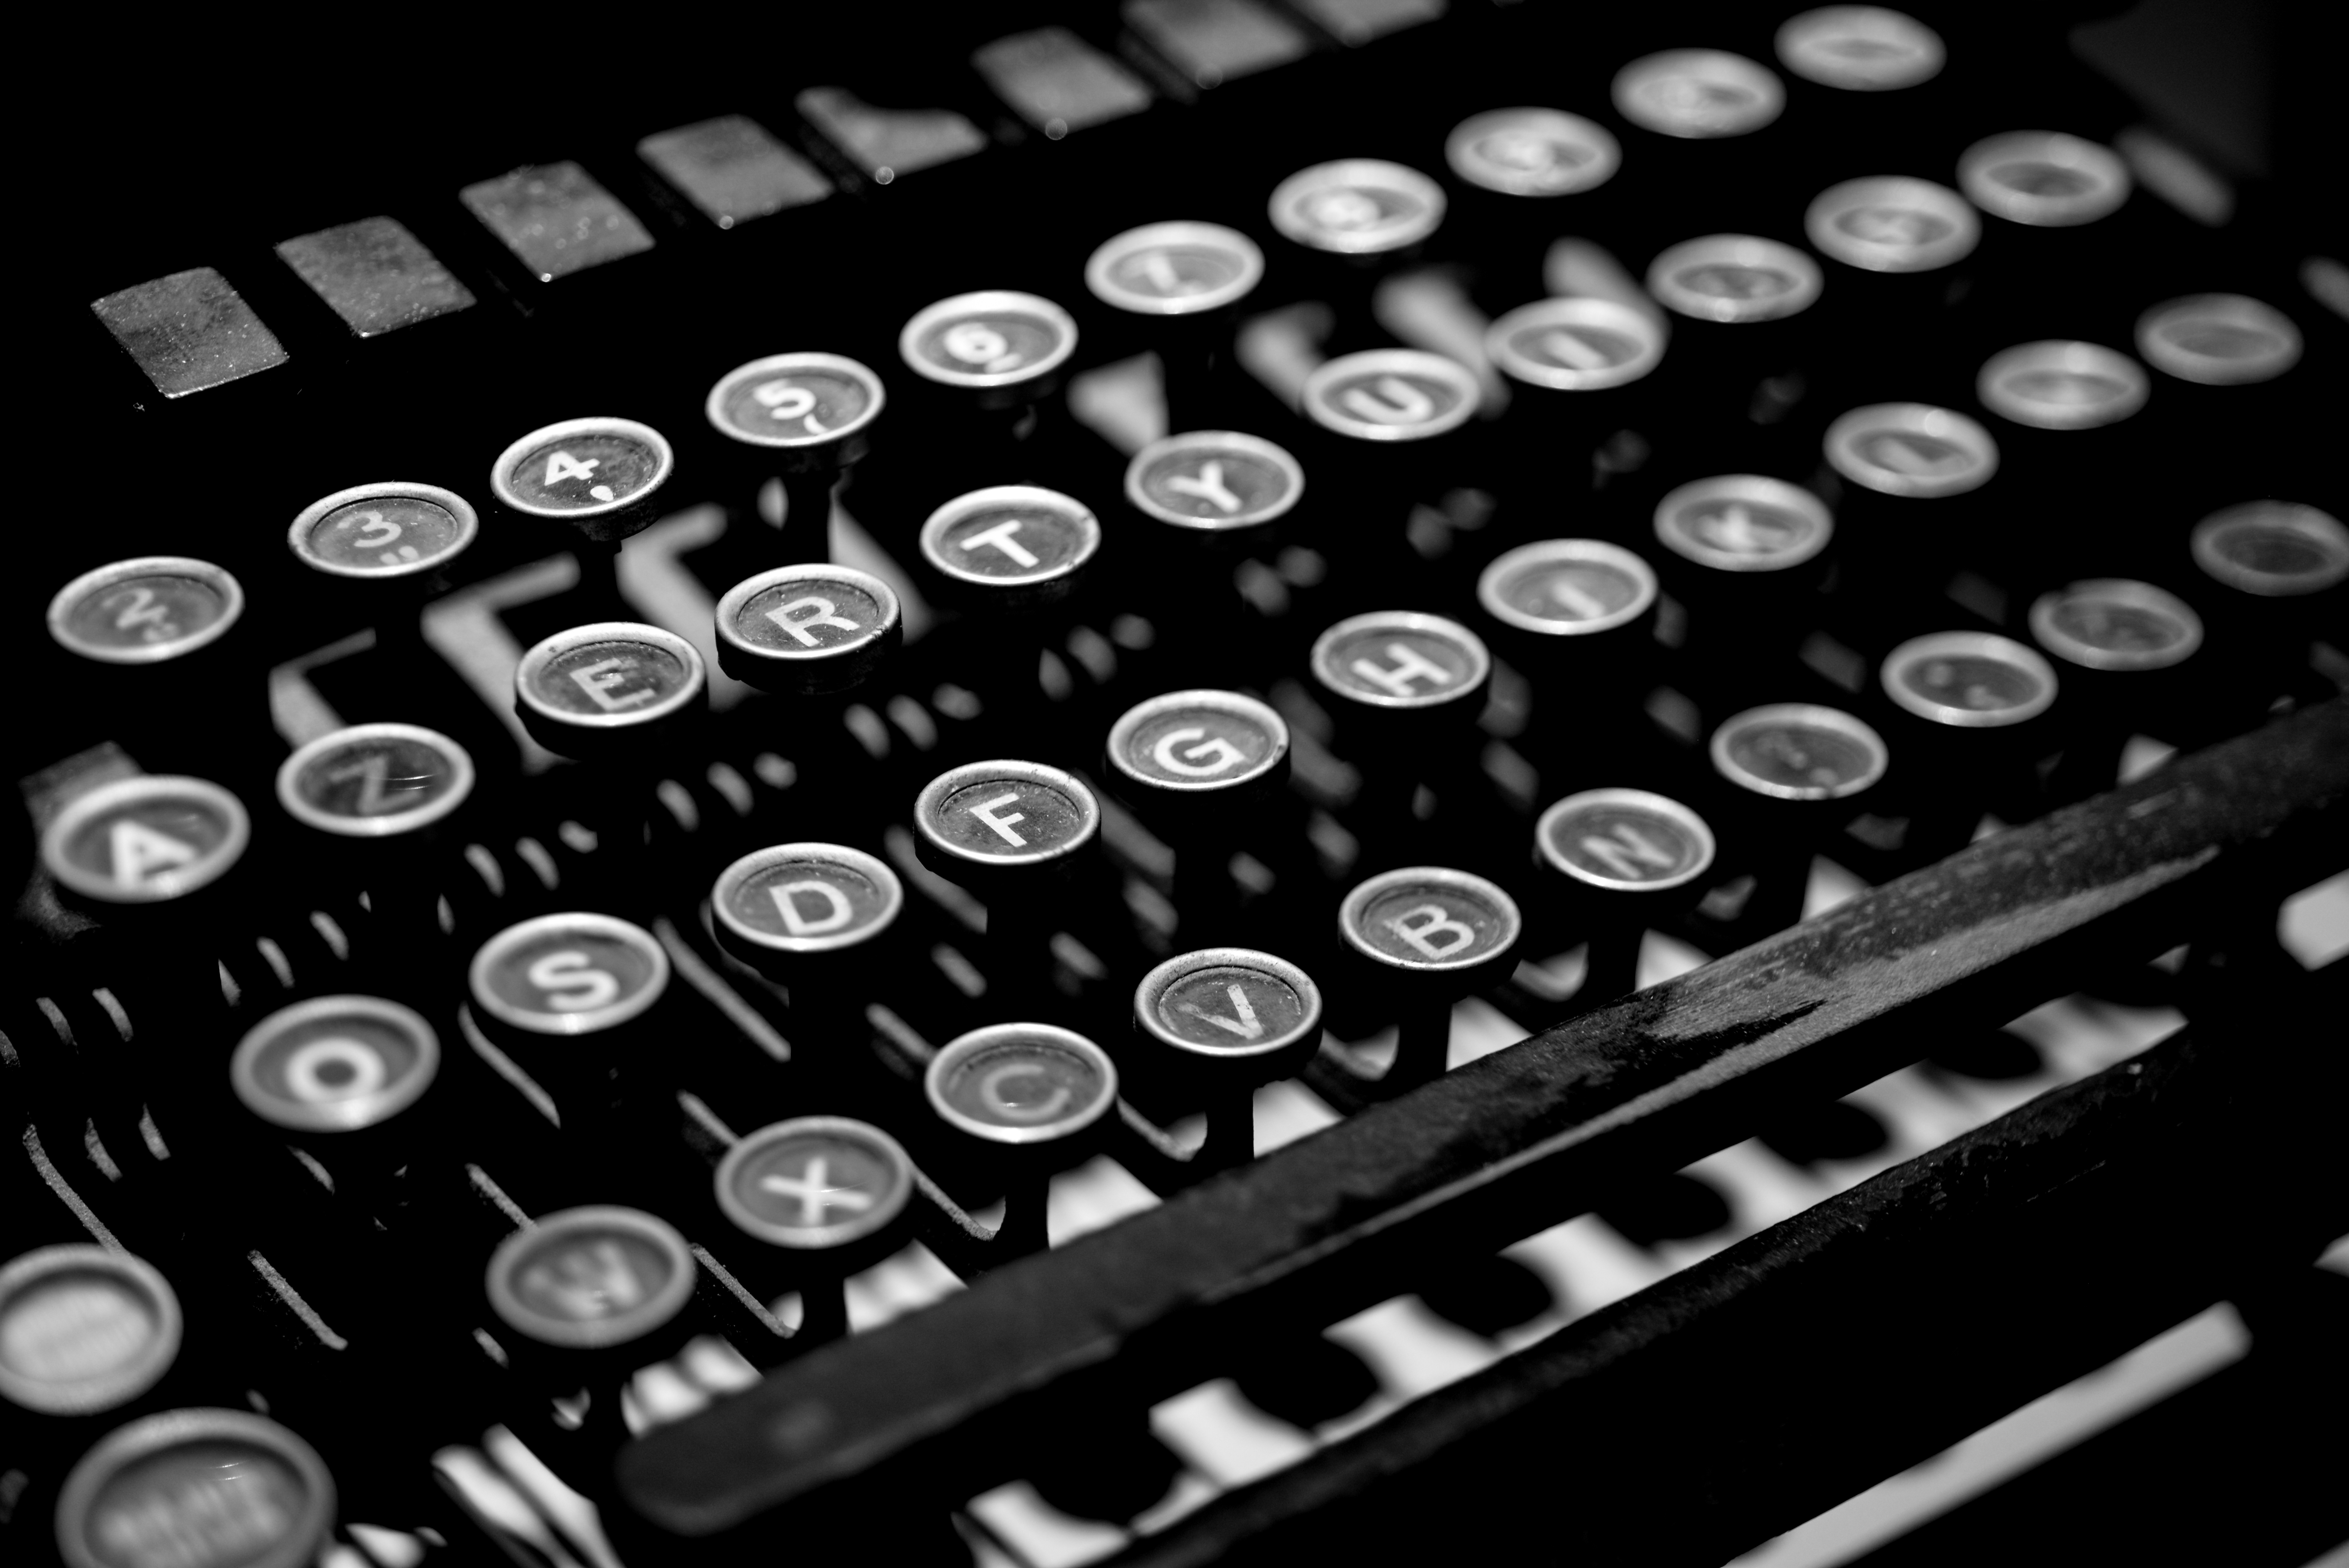 miscellanea, miscellaneous, typography, keys, typewriter, printing house